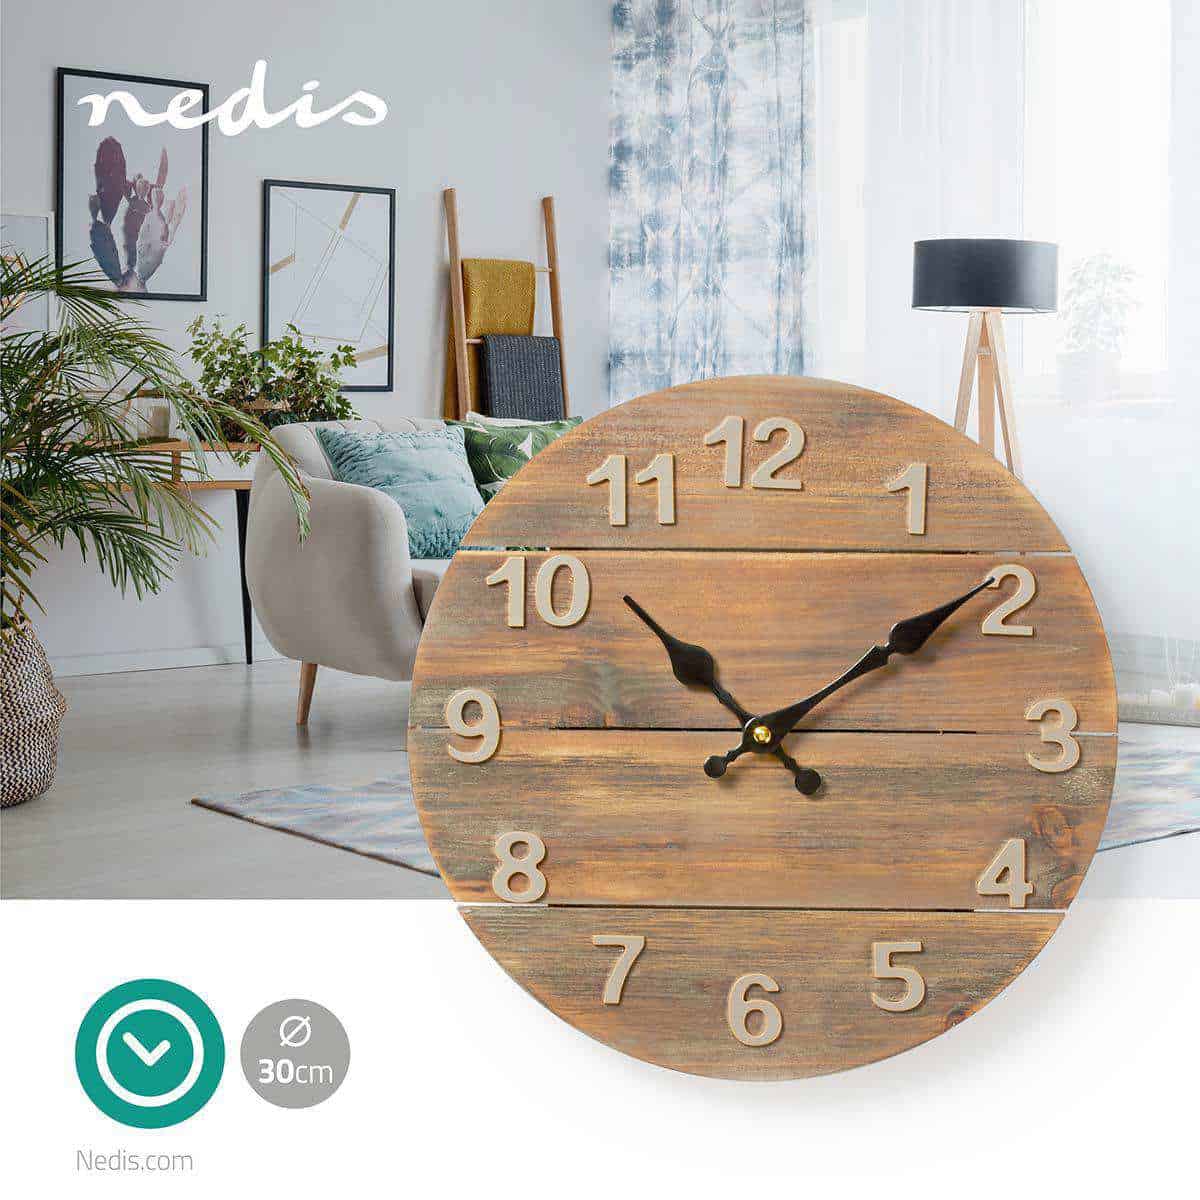 Relógio de parede em madeira 30cm Nedis